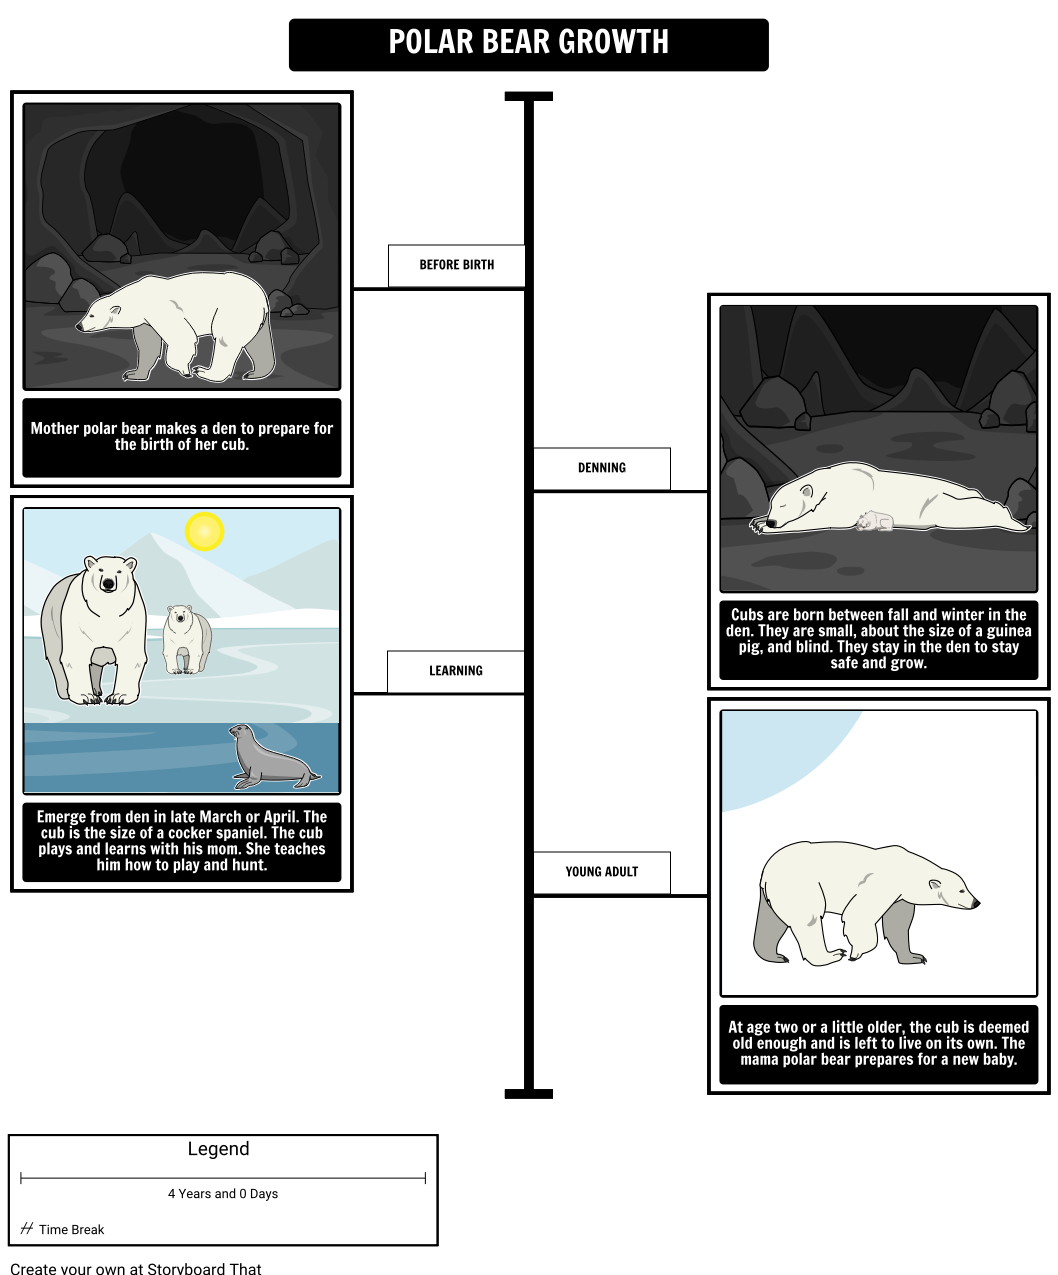 Where Do Polar Bears Live? Polar Bear Growth